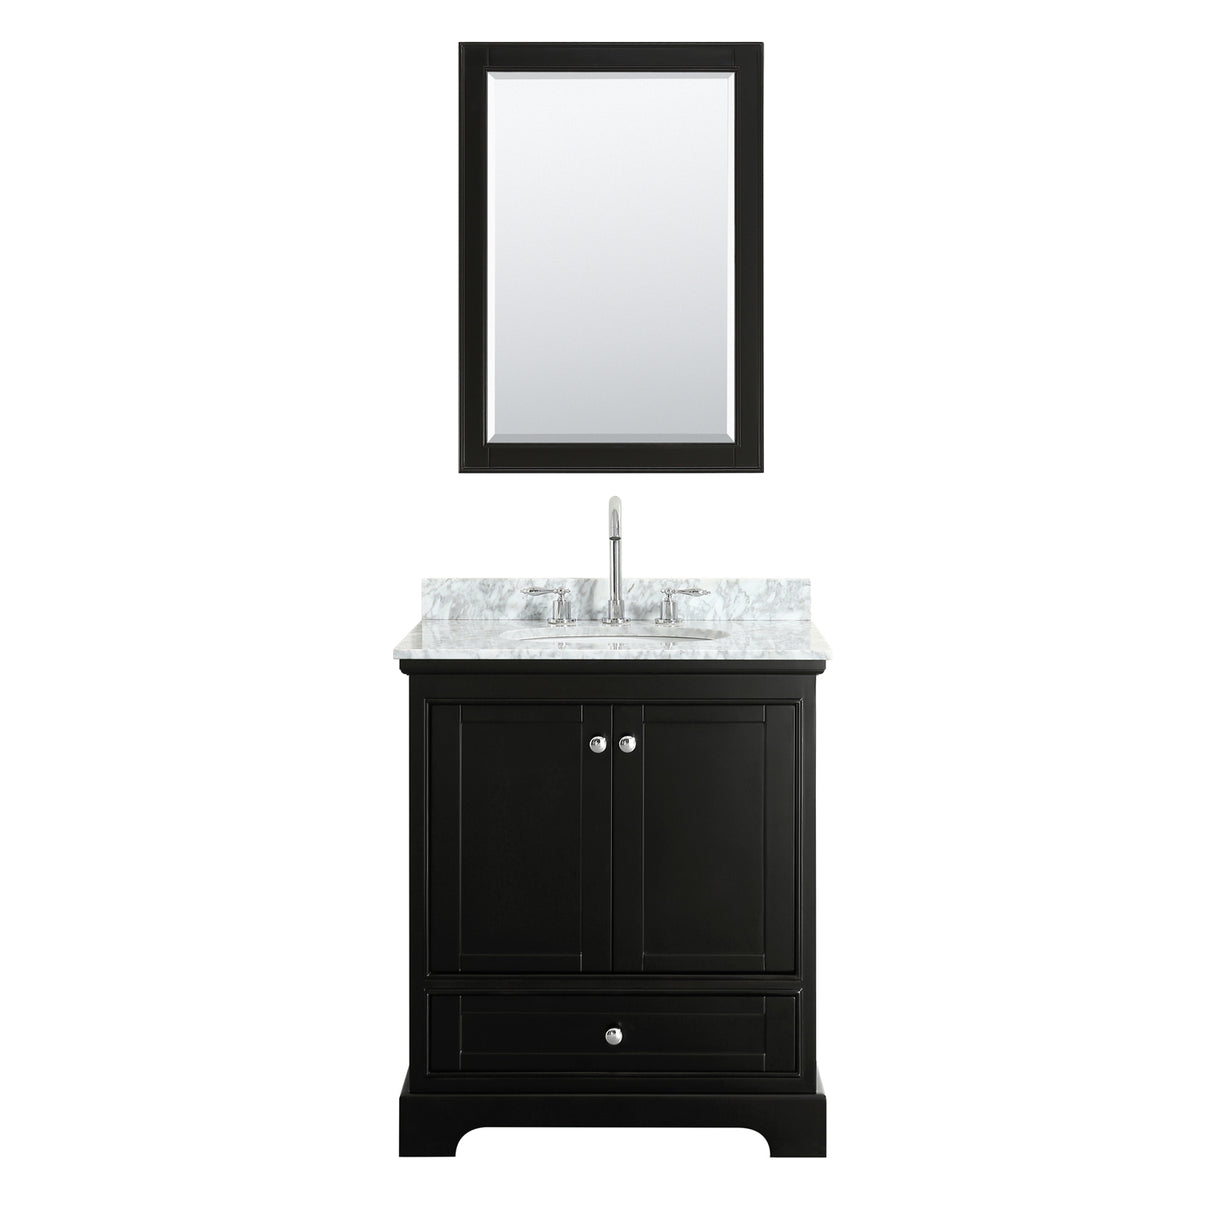 Deborah 30 Inch Single Bathroom Vanity in Dark Espresso White Carrara Marble Countertop Undermount Oval Sink and Medicine Cabinet